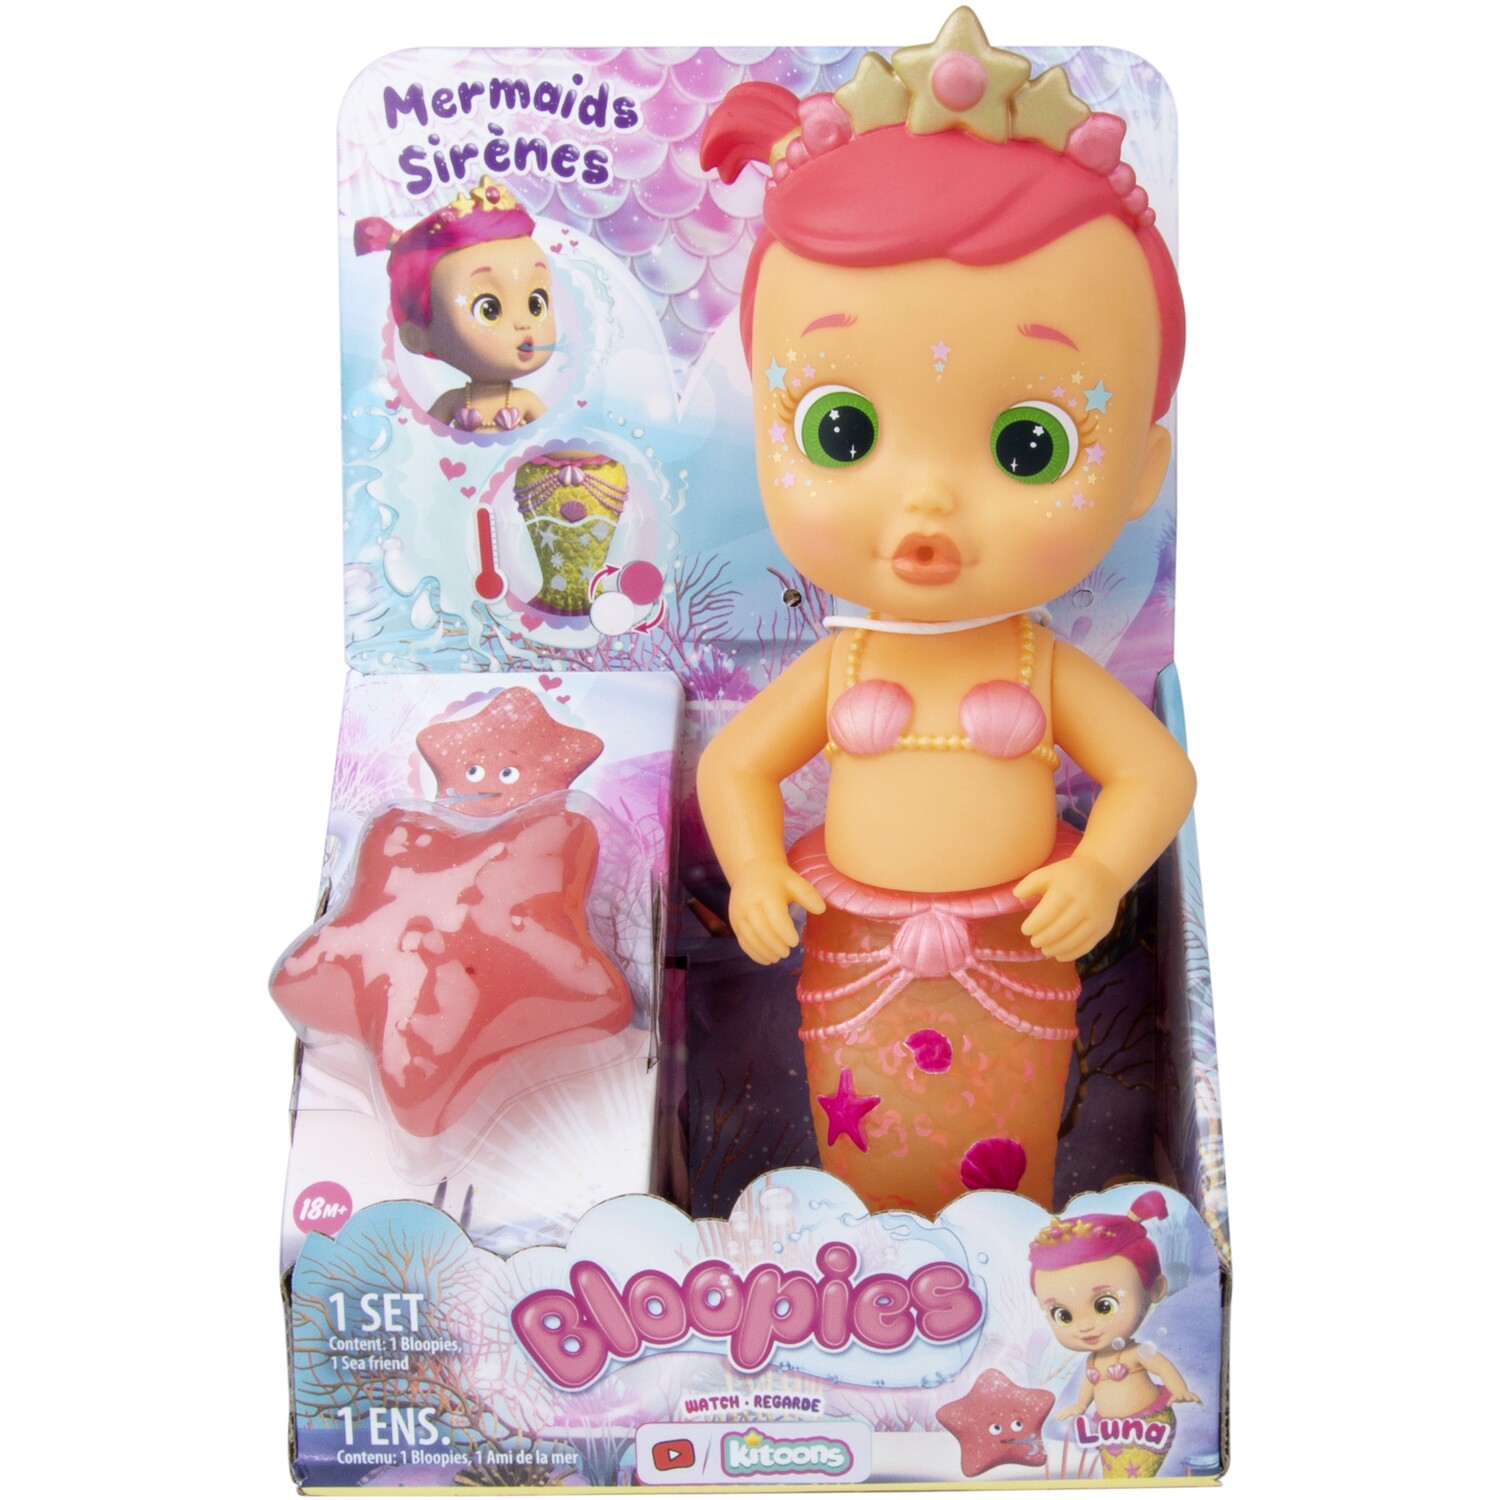 Single Bloopies Mermaids Series 2 Bath Toy in Assorted styles Image 6